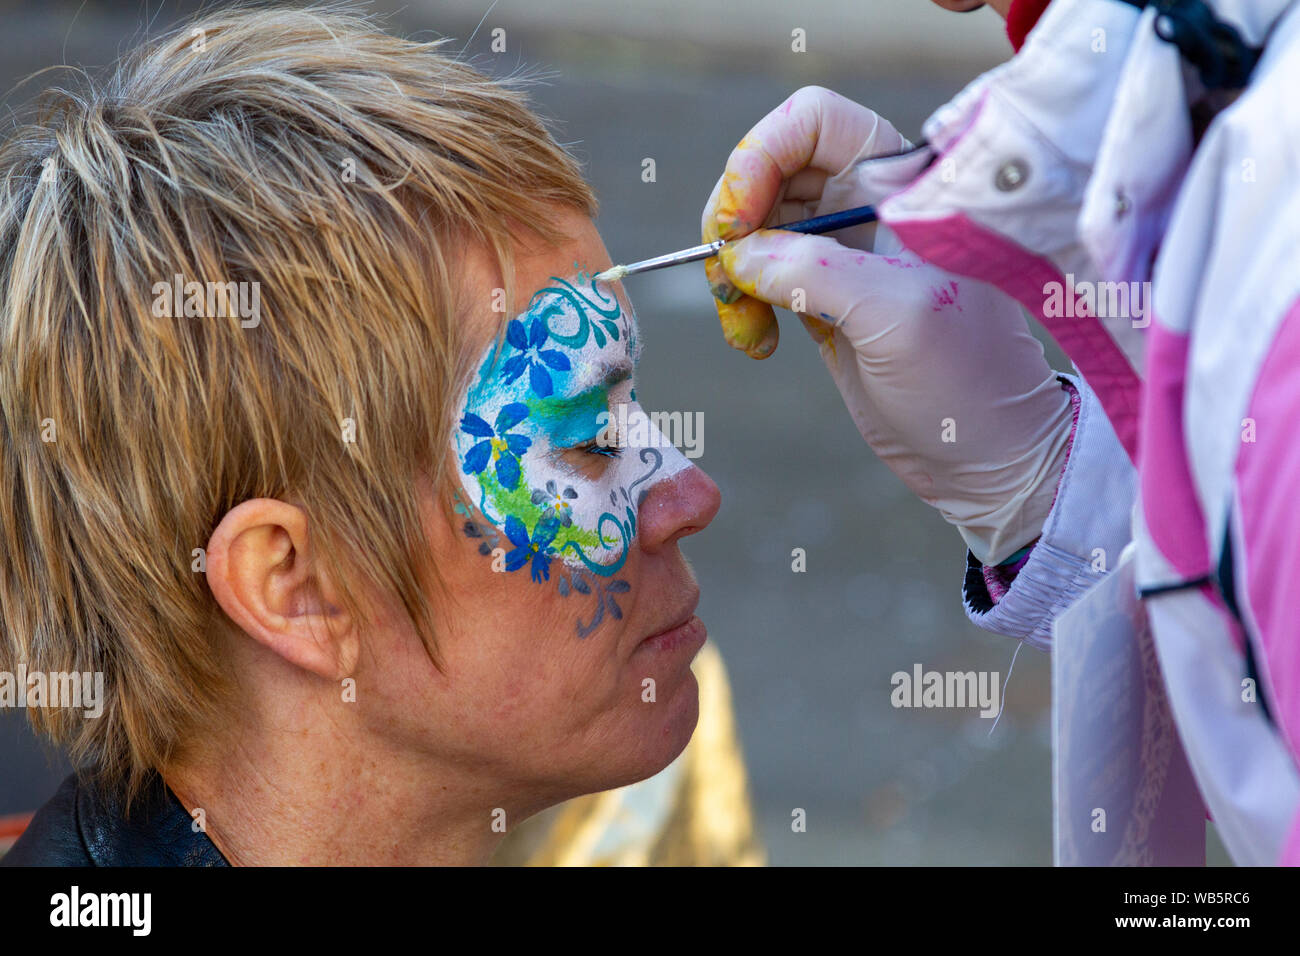 La peinture sur le visage pendant le carnaval. Banque D'Images